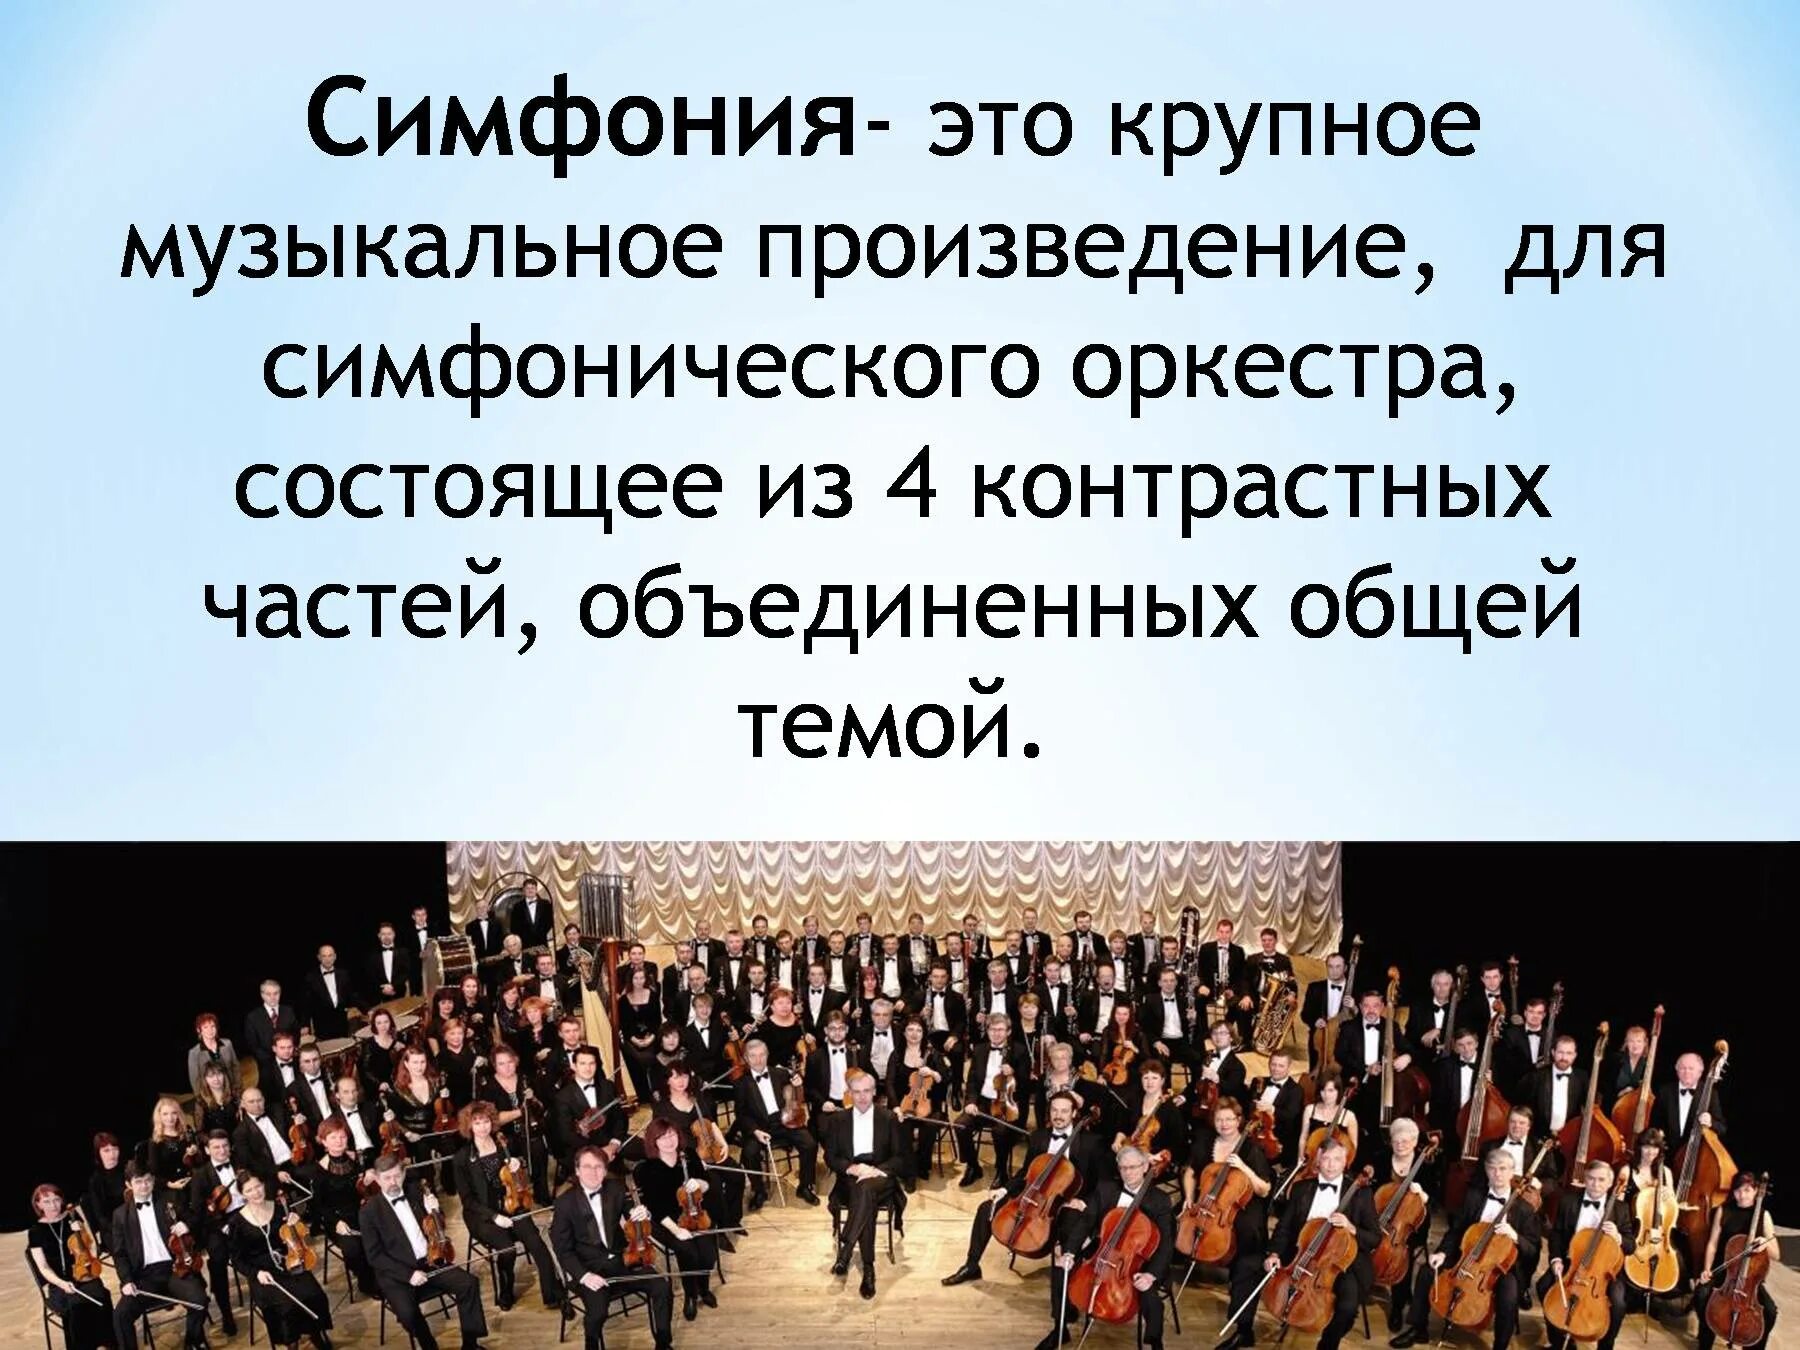 Симфония. Произведения для симфонического оркестра. Симфония-это музыкальное произведение. Музыкальное произведение для симфонического оркестра.